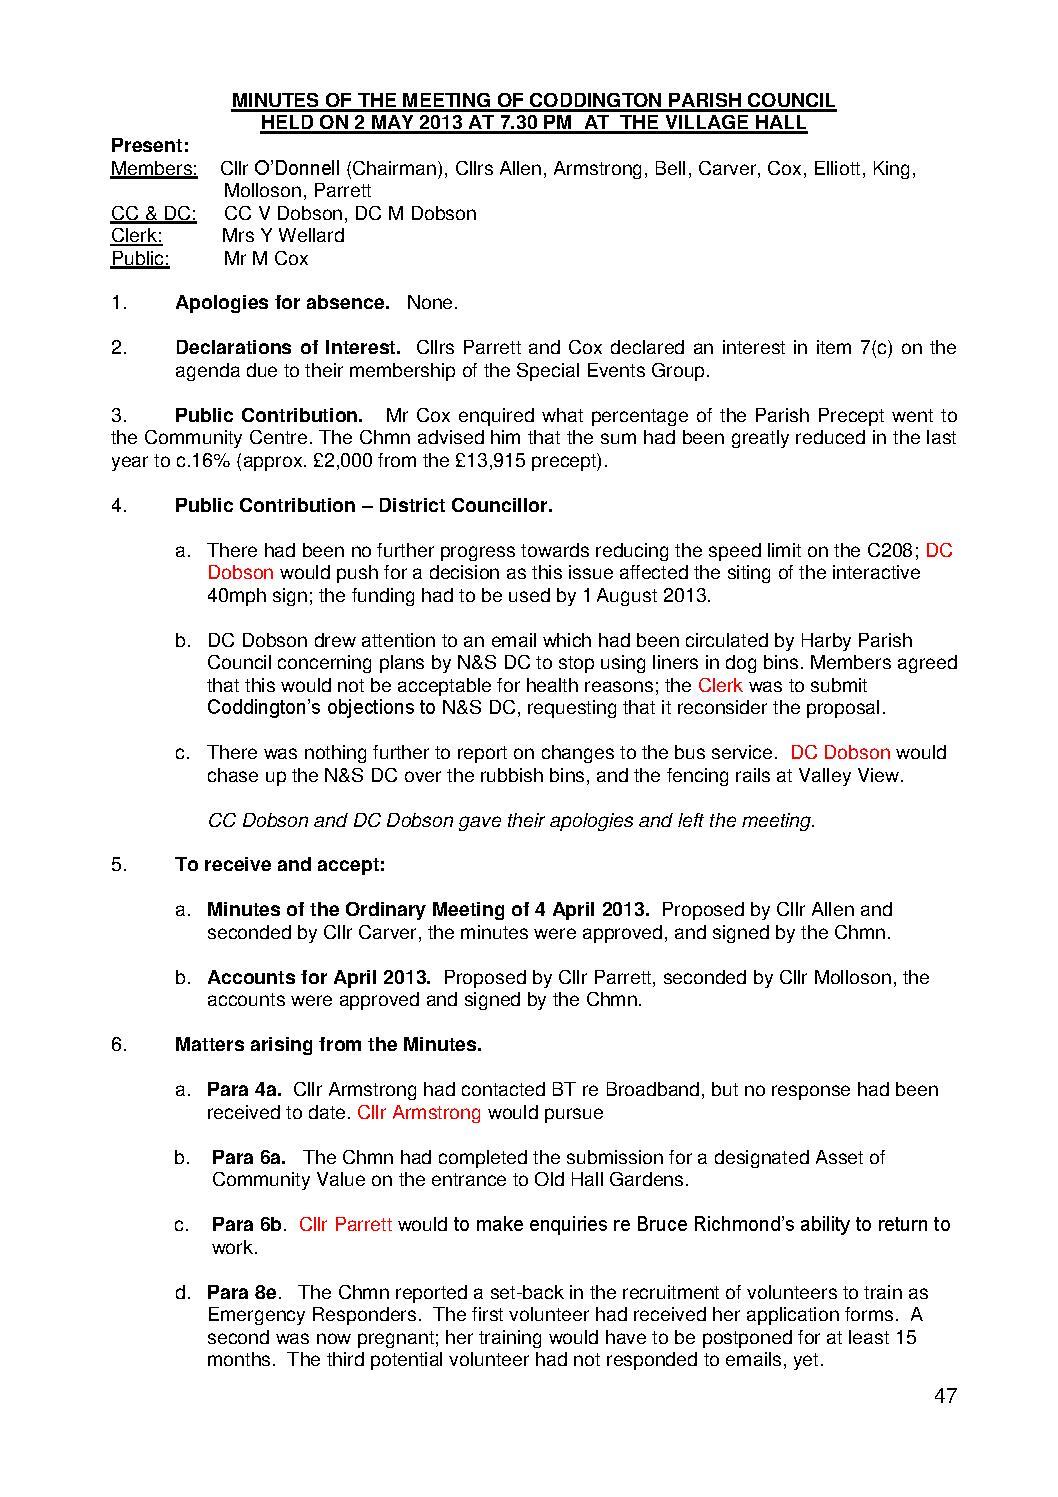 Parish Council Meeting 2 May 2013 Minutes